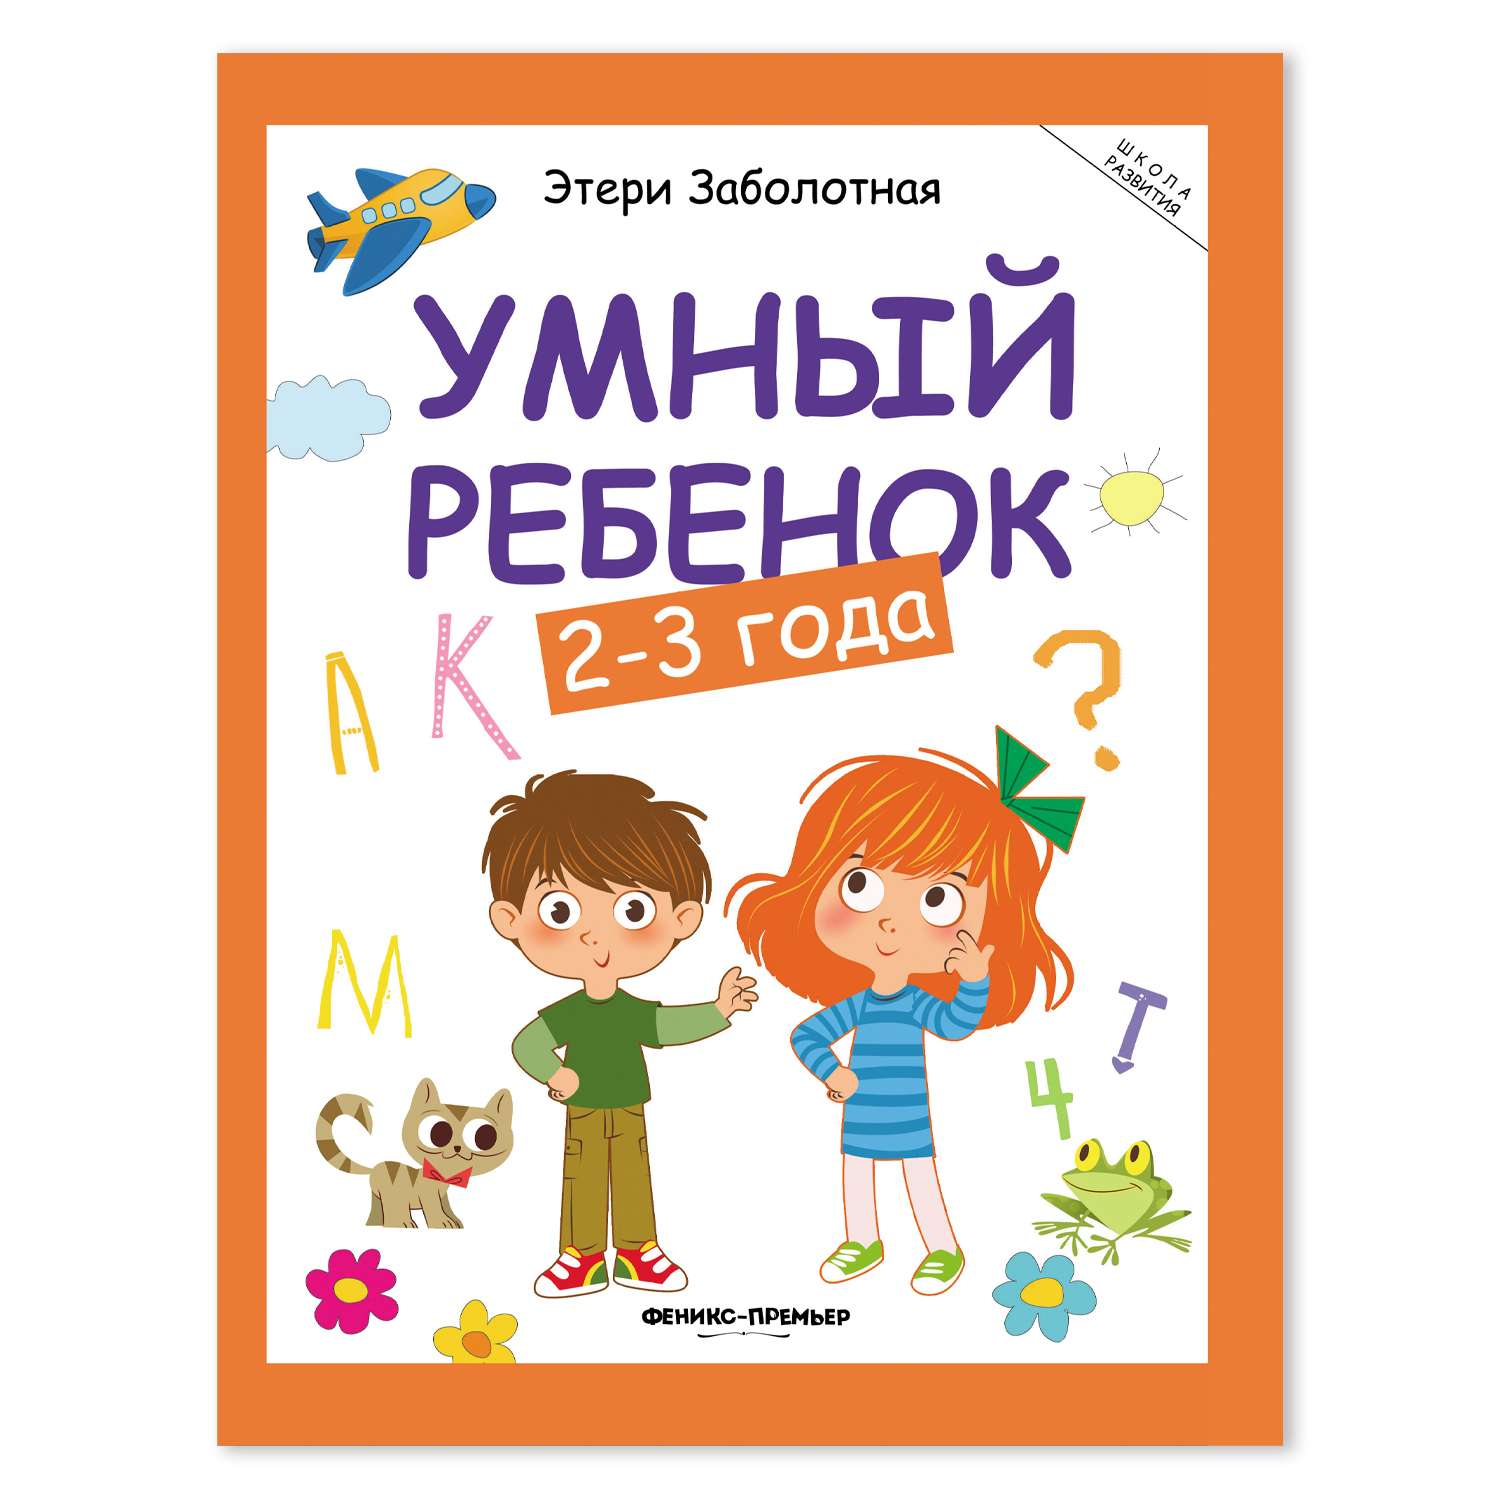 Книга Умный ребенок 2-3 года дп - фото 1